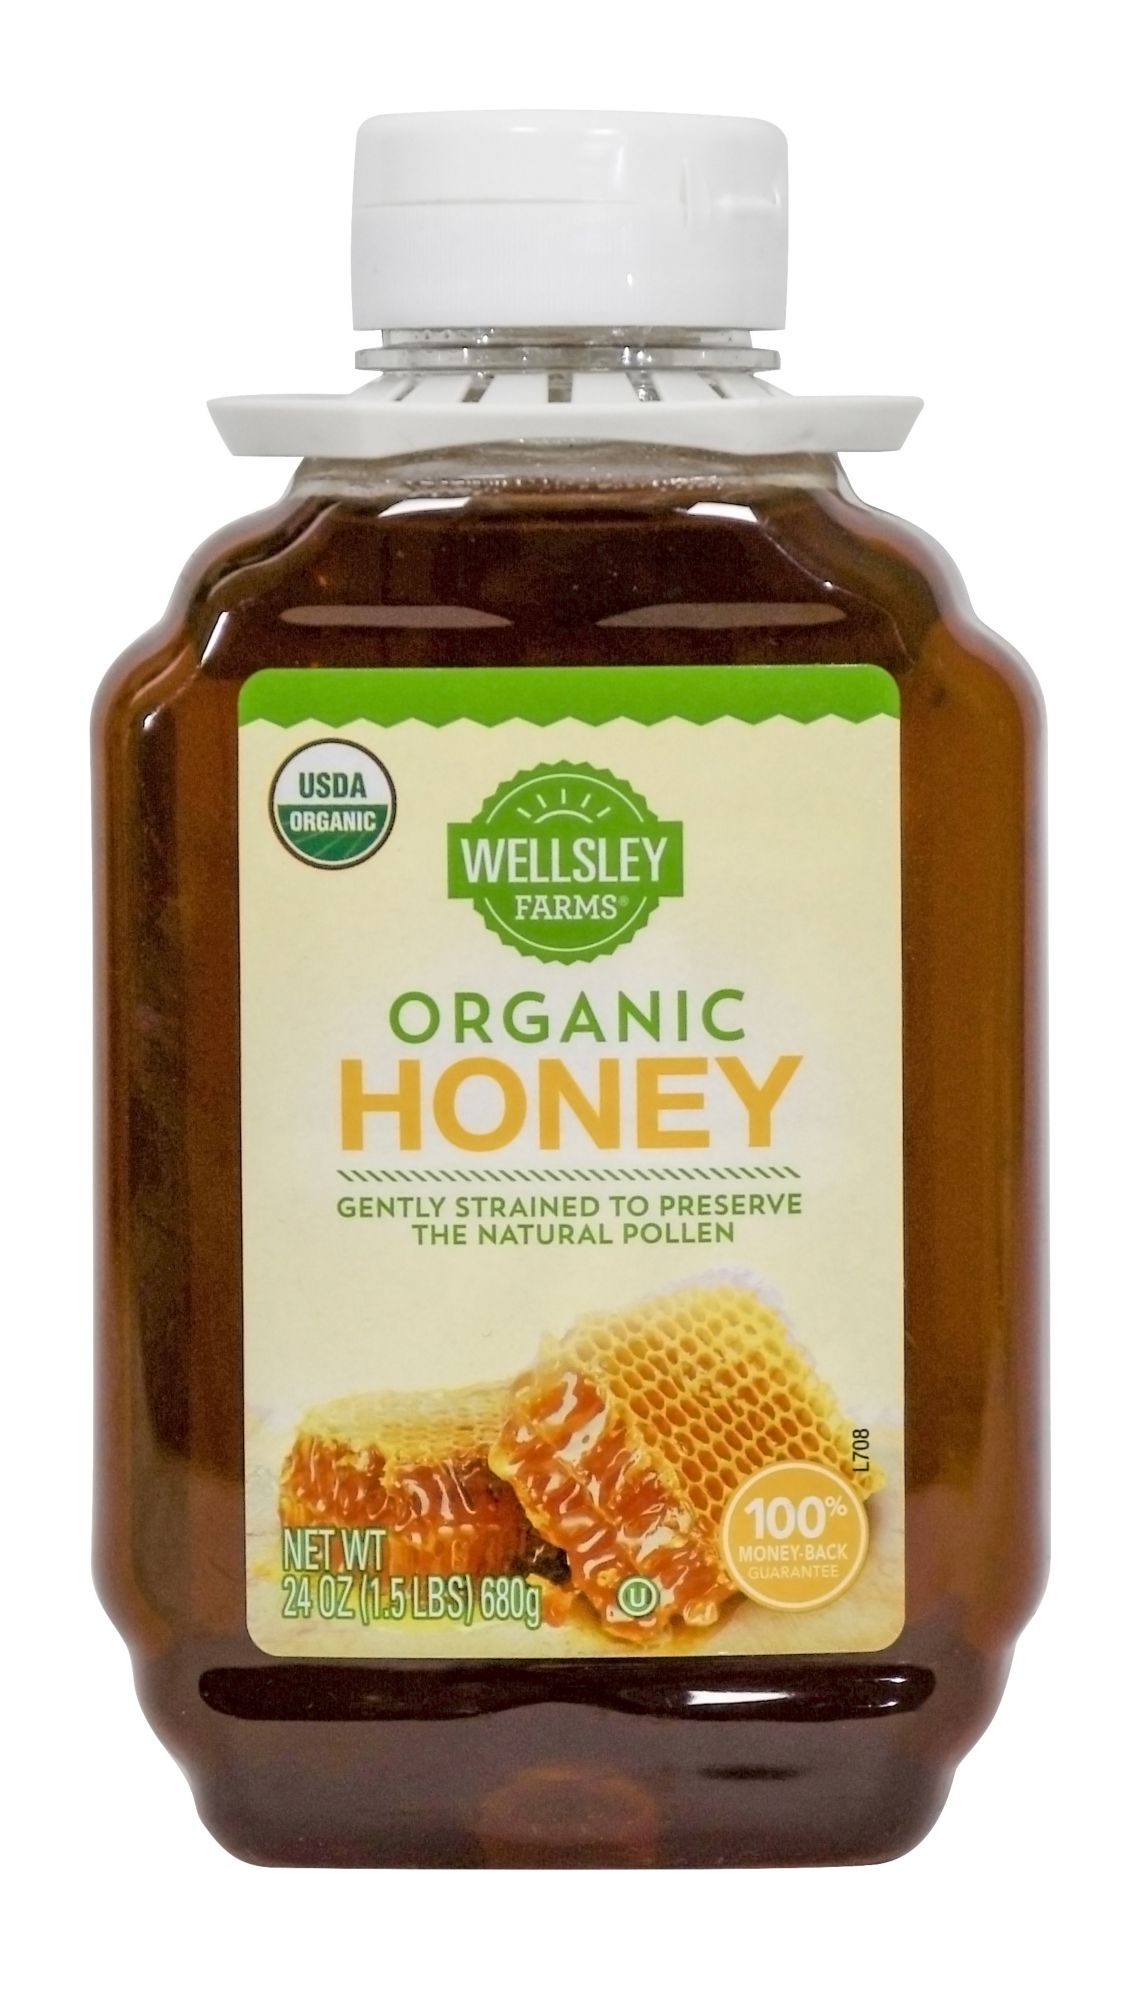 Organic Acacia Honey - Famille Mary